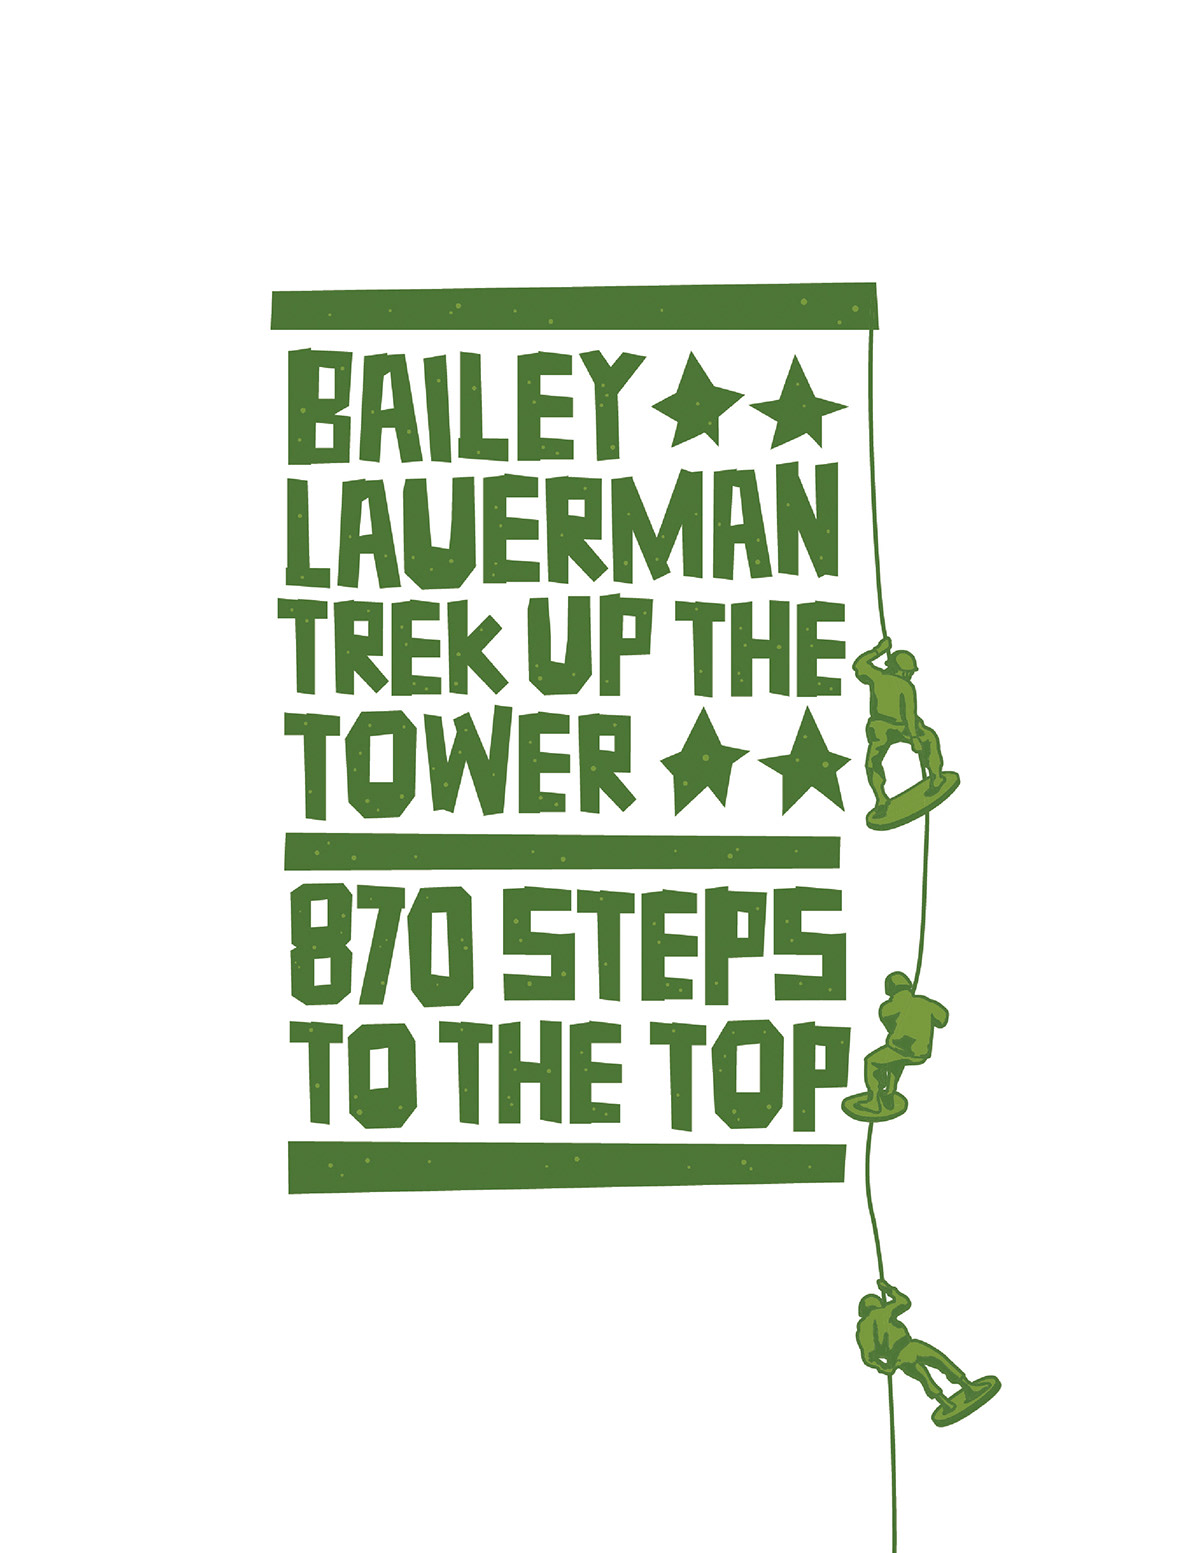 Trek tower army green steps top climb tall men War Combat challenge Wellness shirt